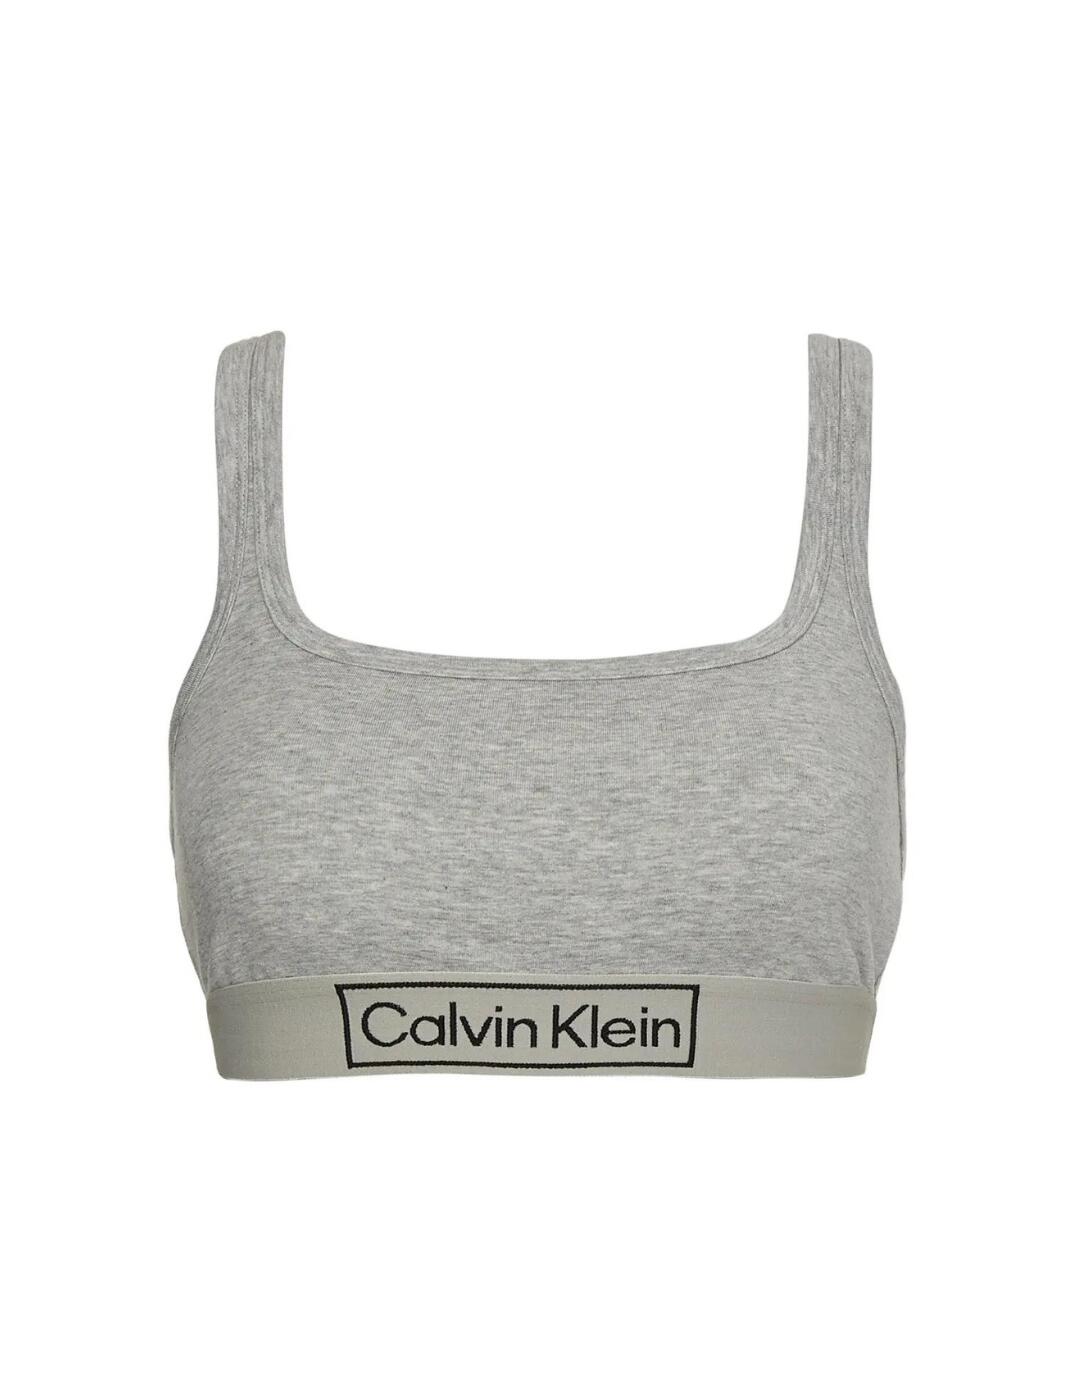 Calvin Klein Long Sleeve Bralette Top - Belle Lingerie